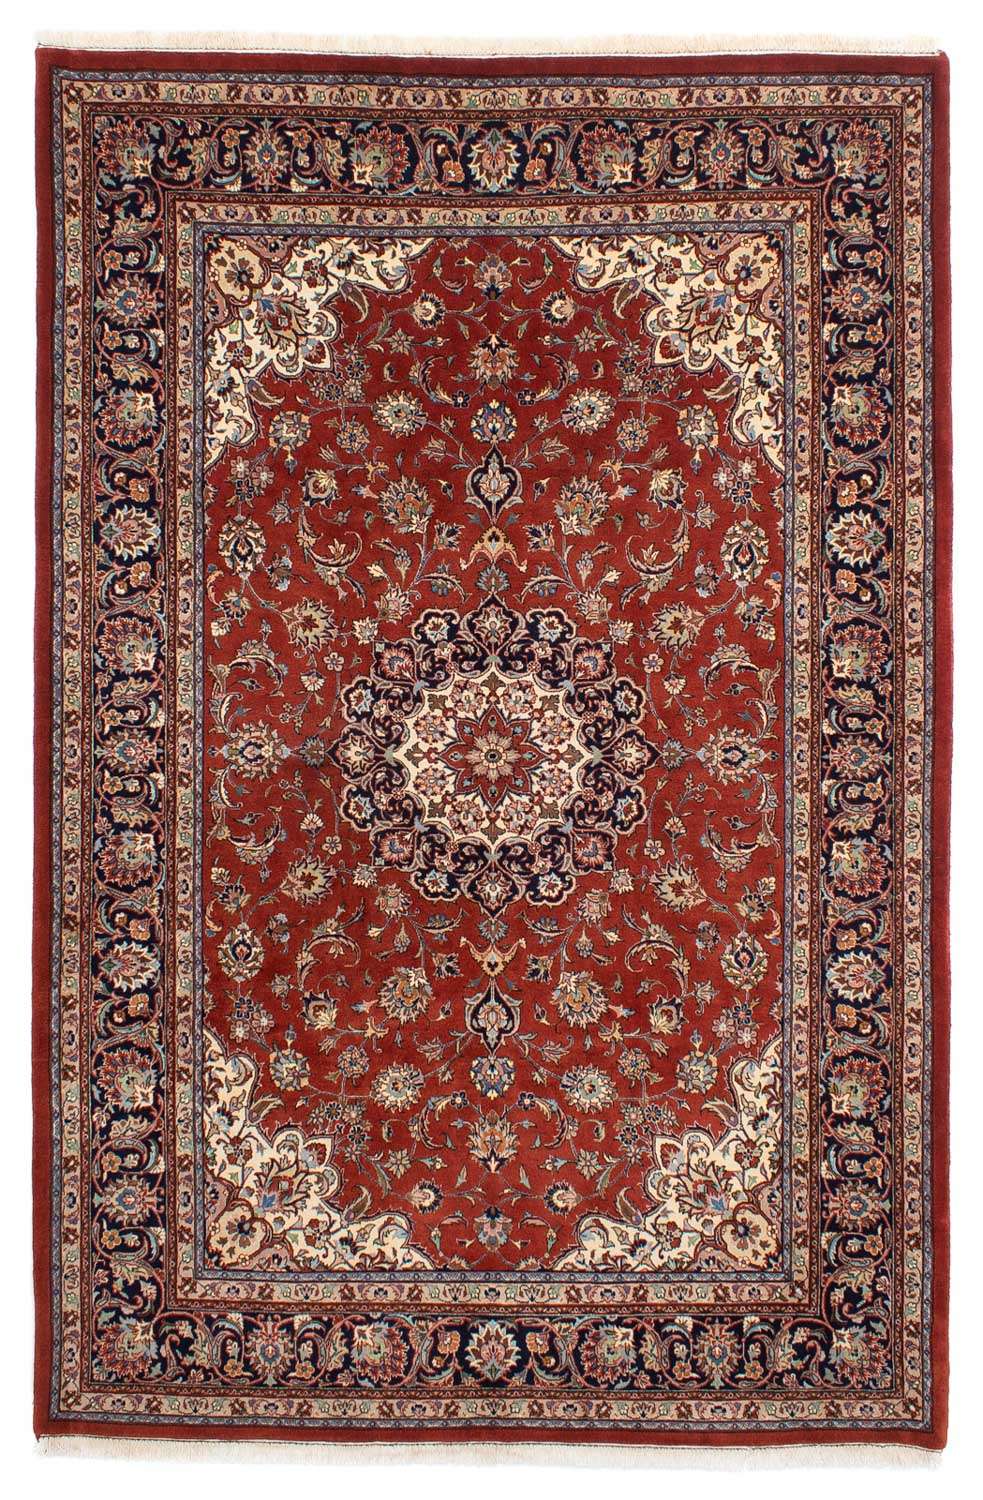 Alfombra persa - Clásica - 293 x 201 cm - rojo